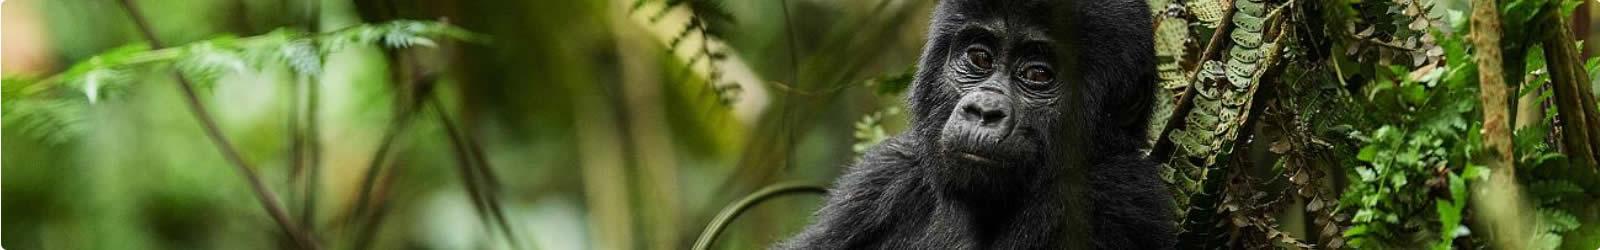 Viaggio in Uganda tra i gorilla di montagna | Turisanda 